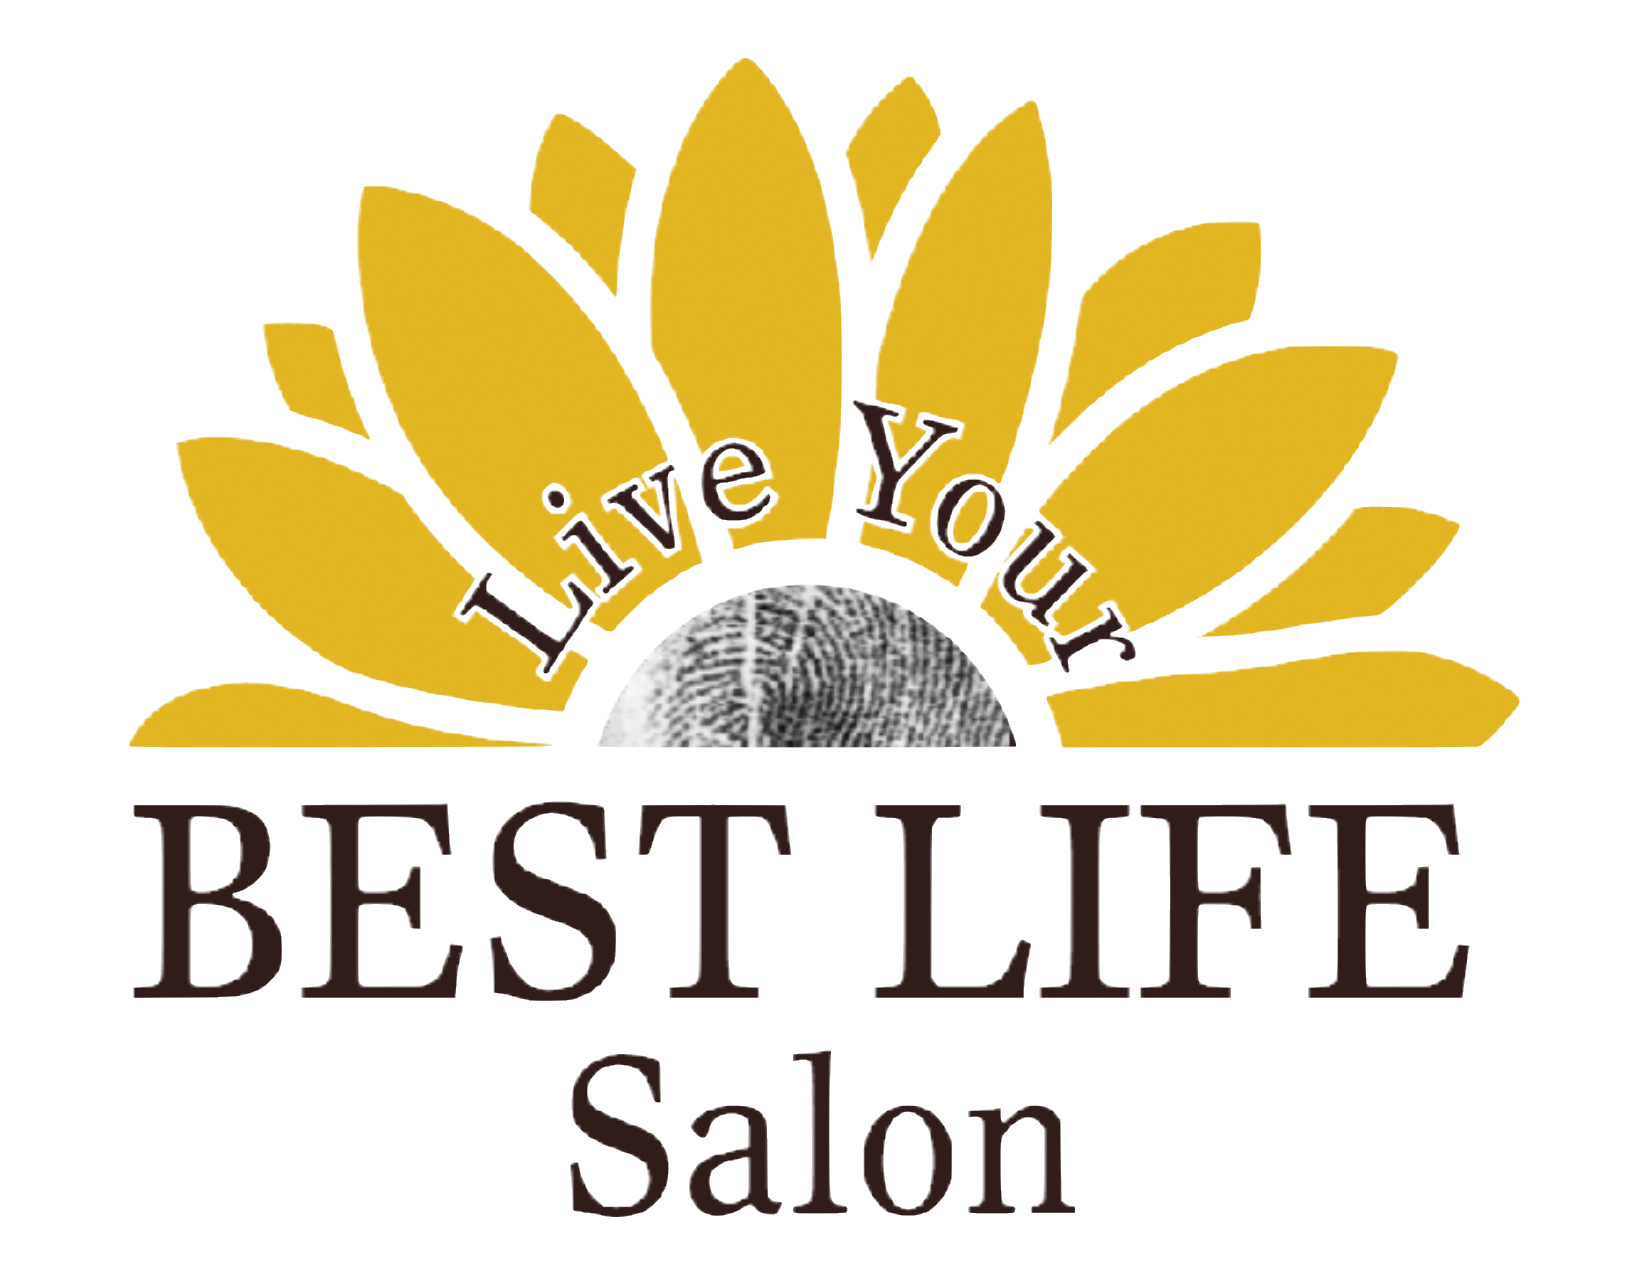 Live Your Best Life Salon, LLC